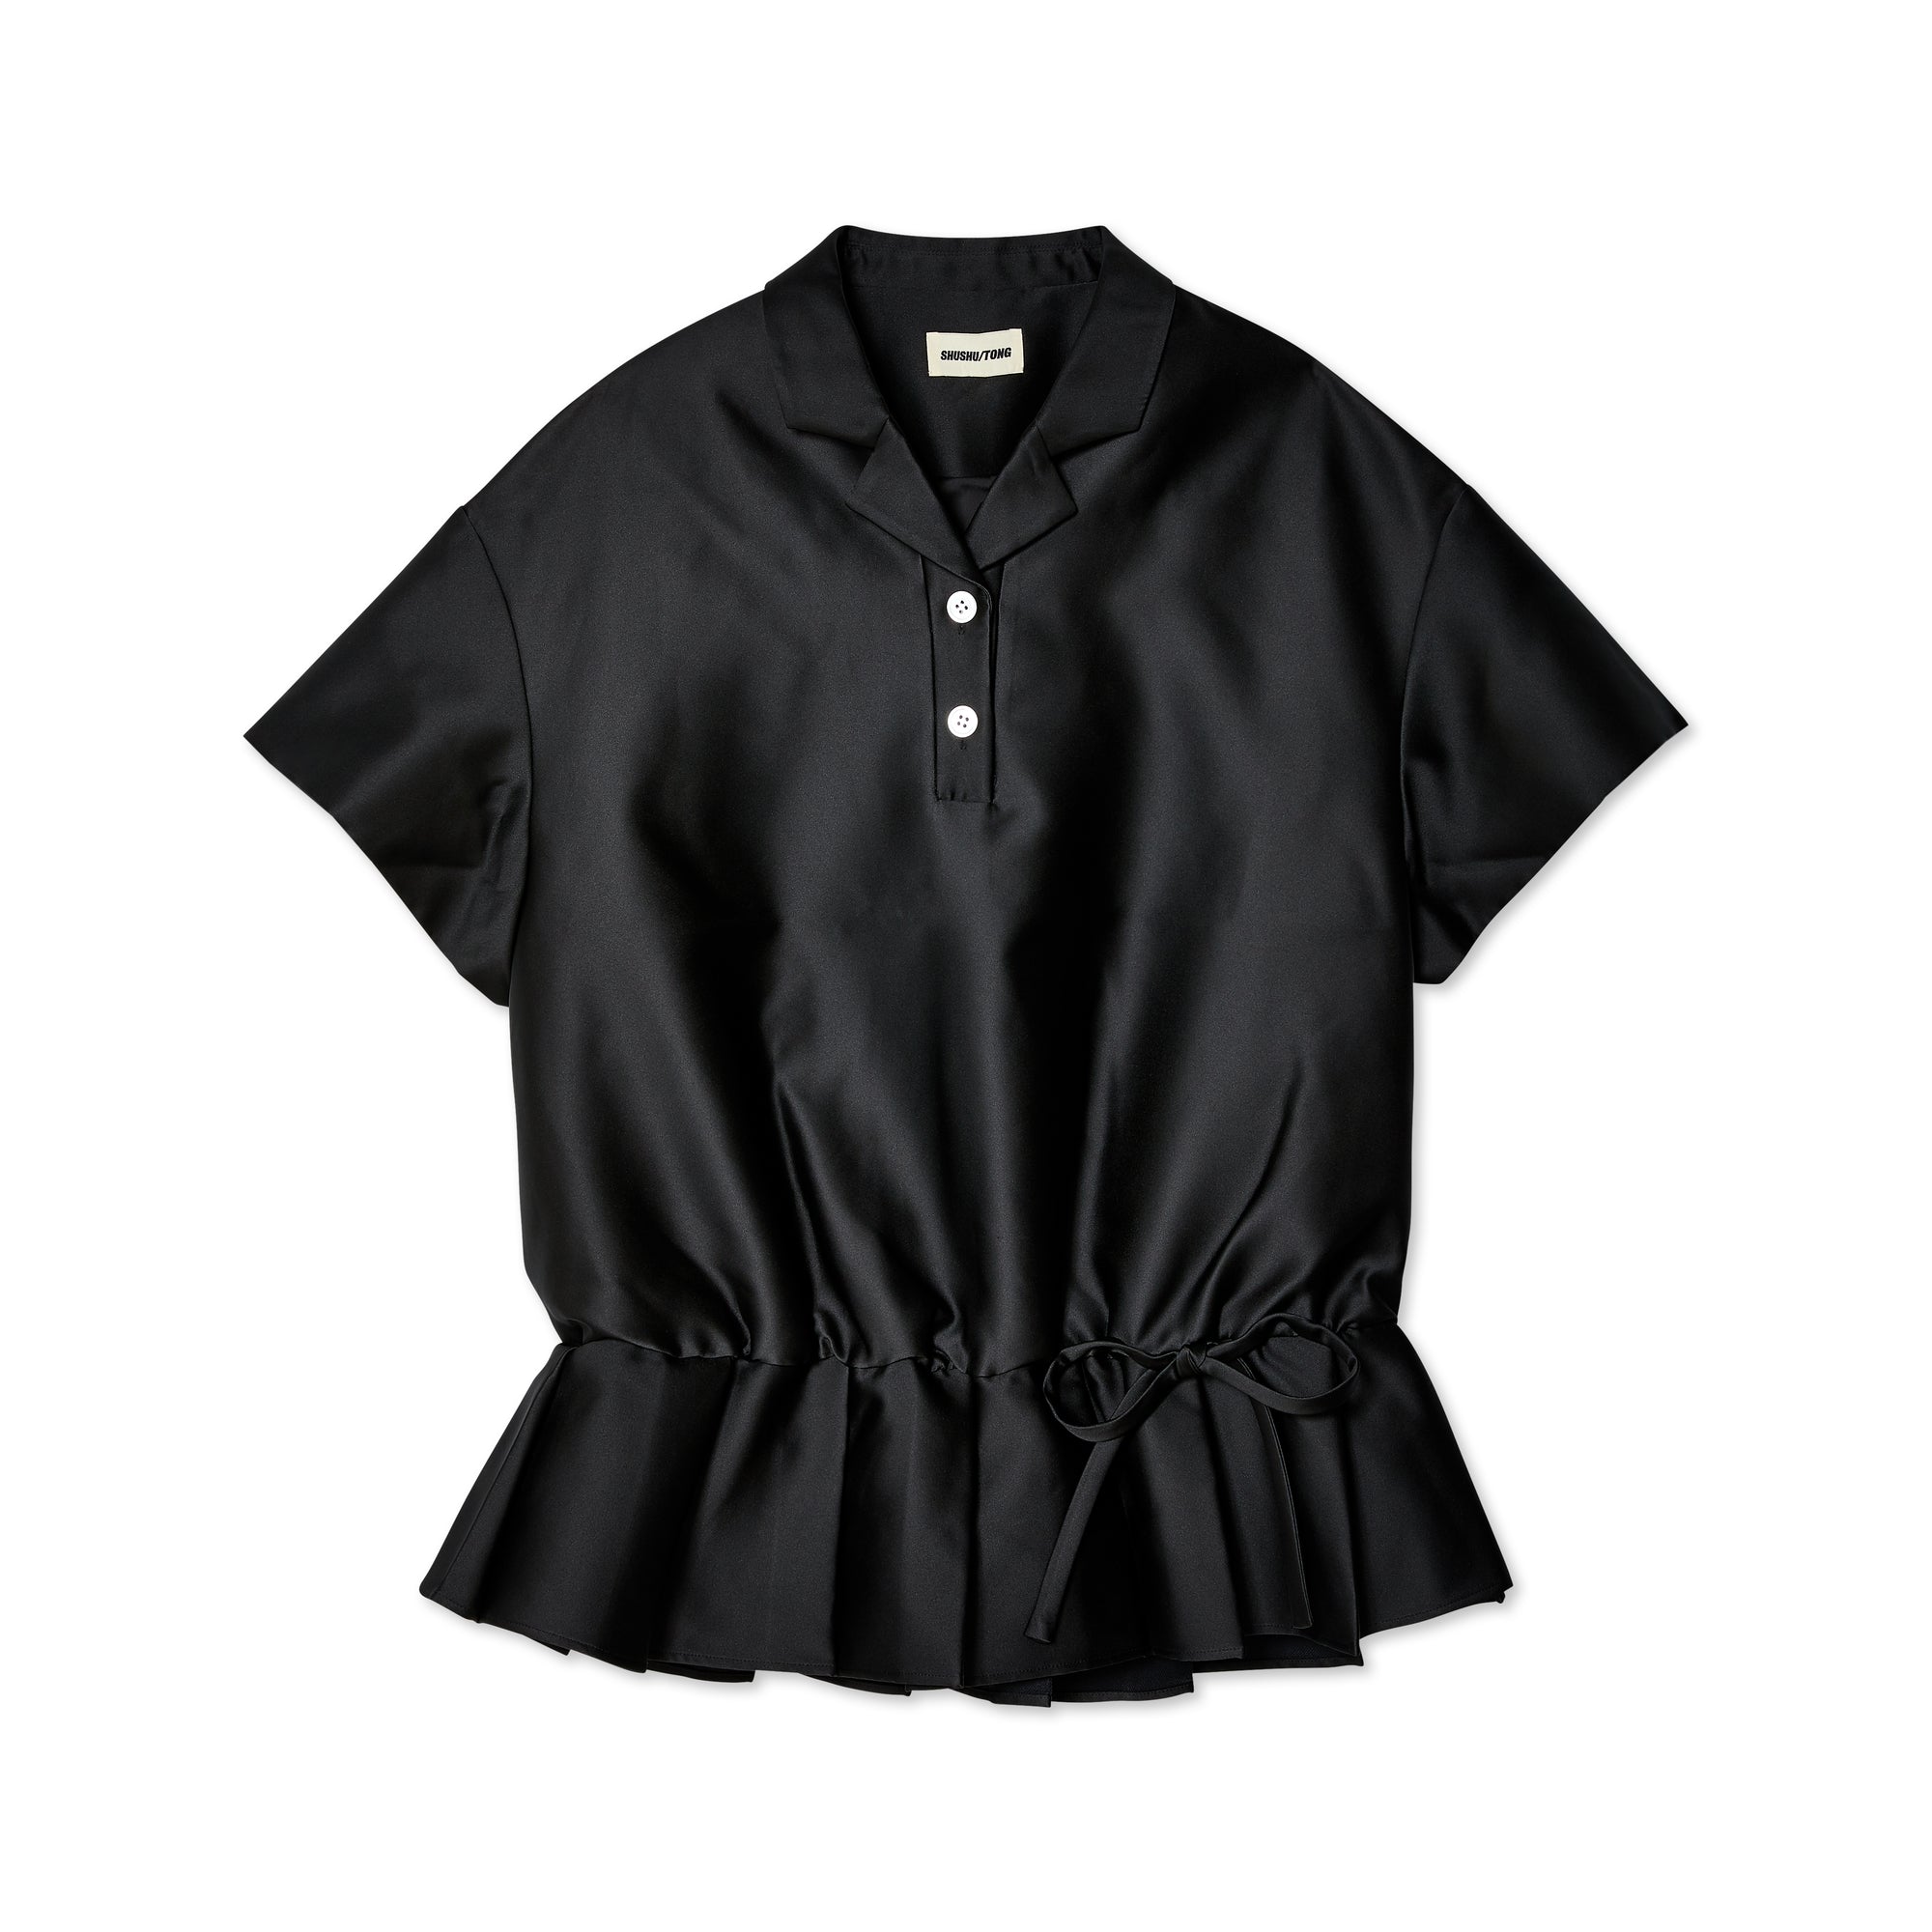 Shushu/Tong - Women's Short Dress - (Black) view 1